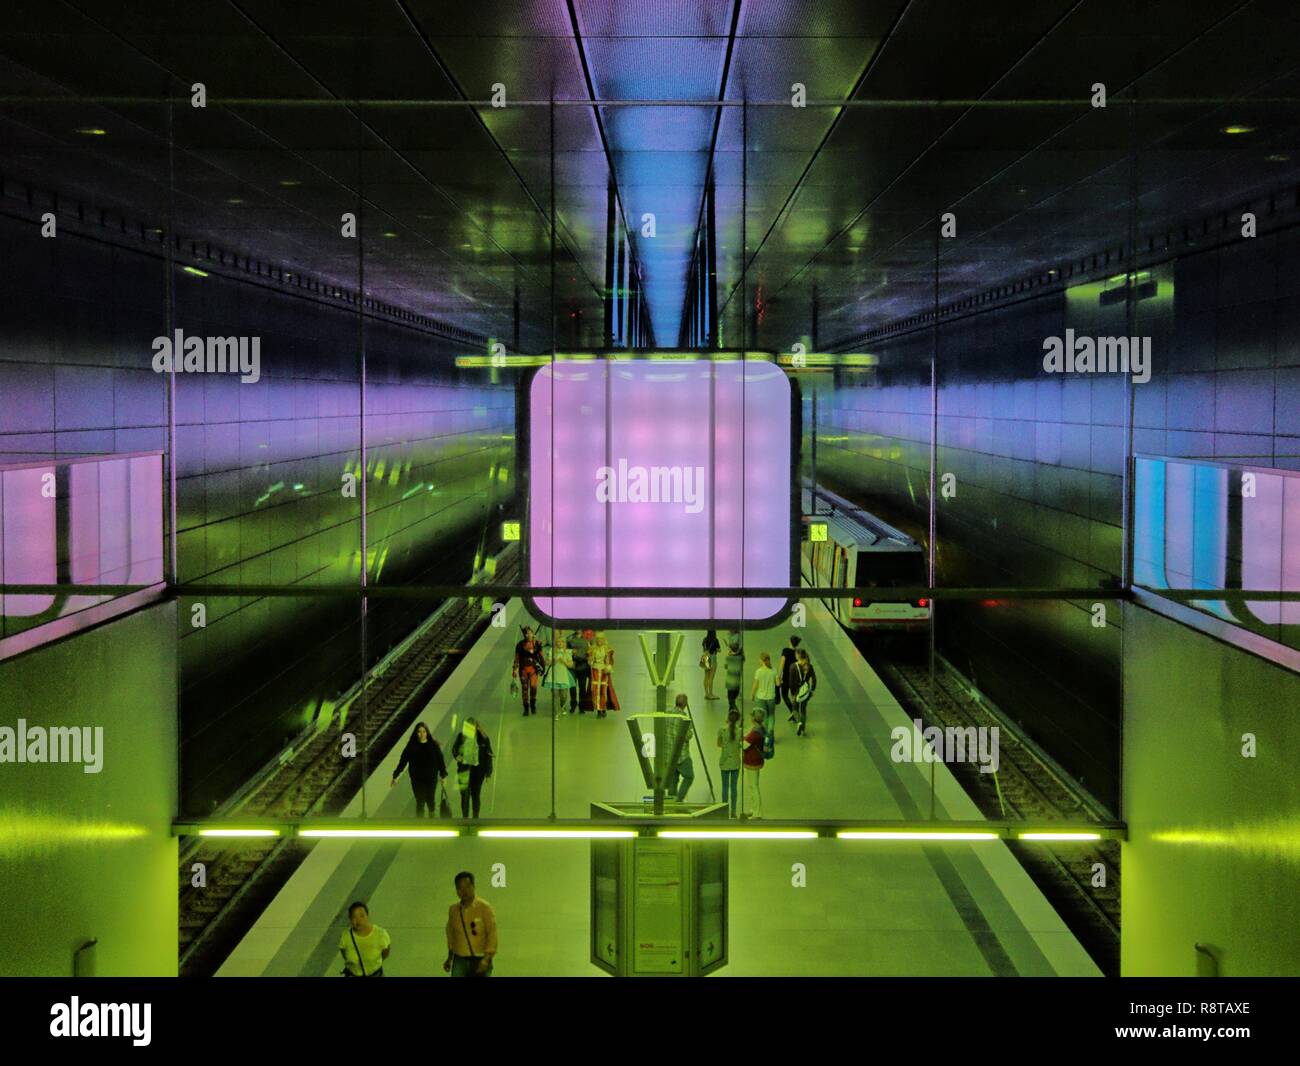 U-Bahn der Linie U4 Hafencity Universität mit ihren charakteristischen Leuchtkästen Foto Stock